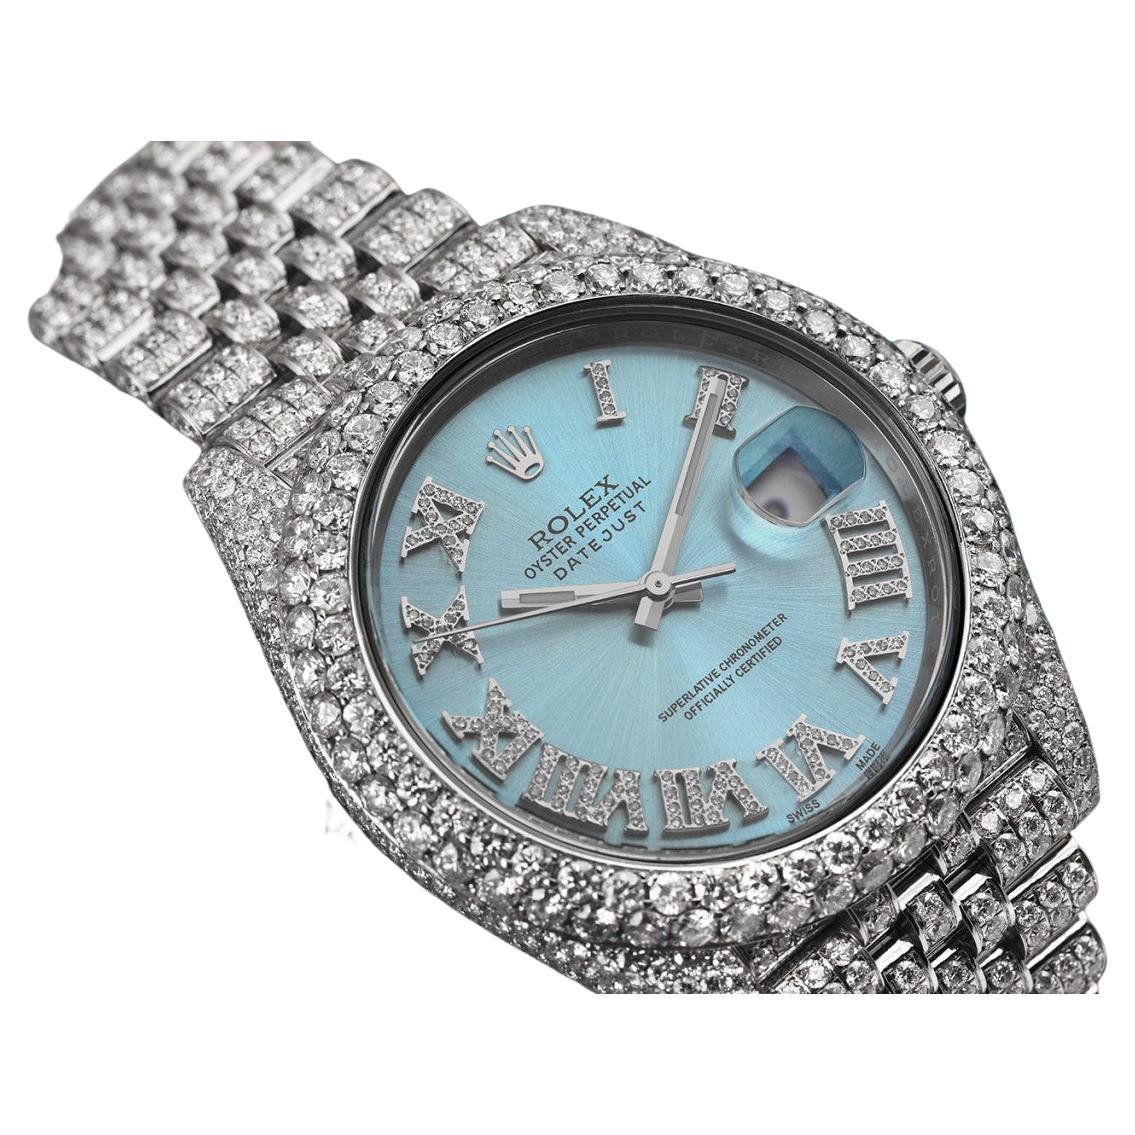 Rolex Herren Datejust Edelstahl benutzerdefinierte vollständig Iced Out Uhr